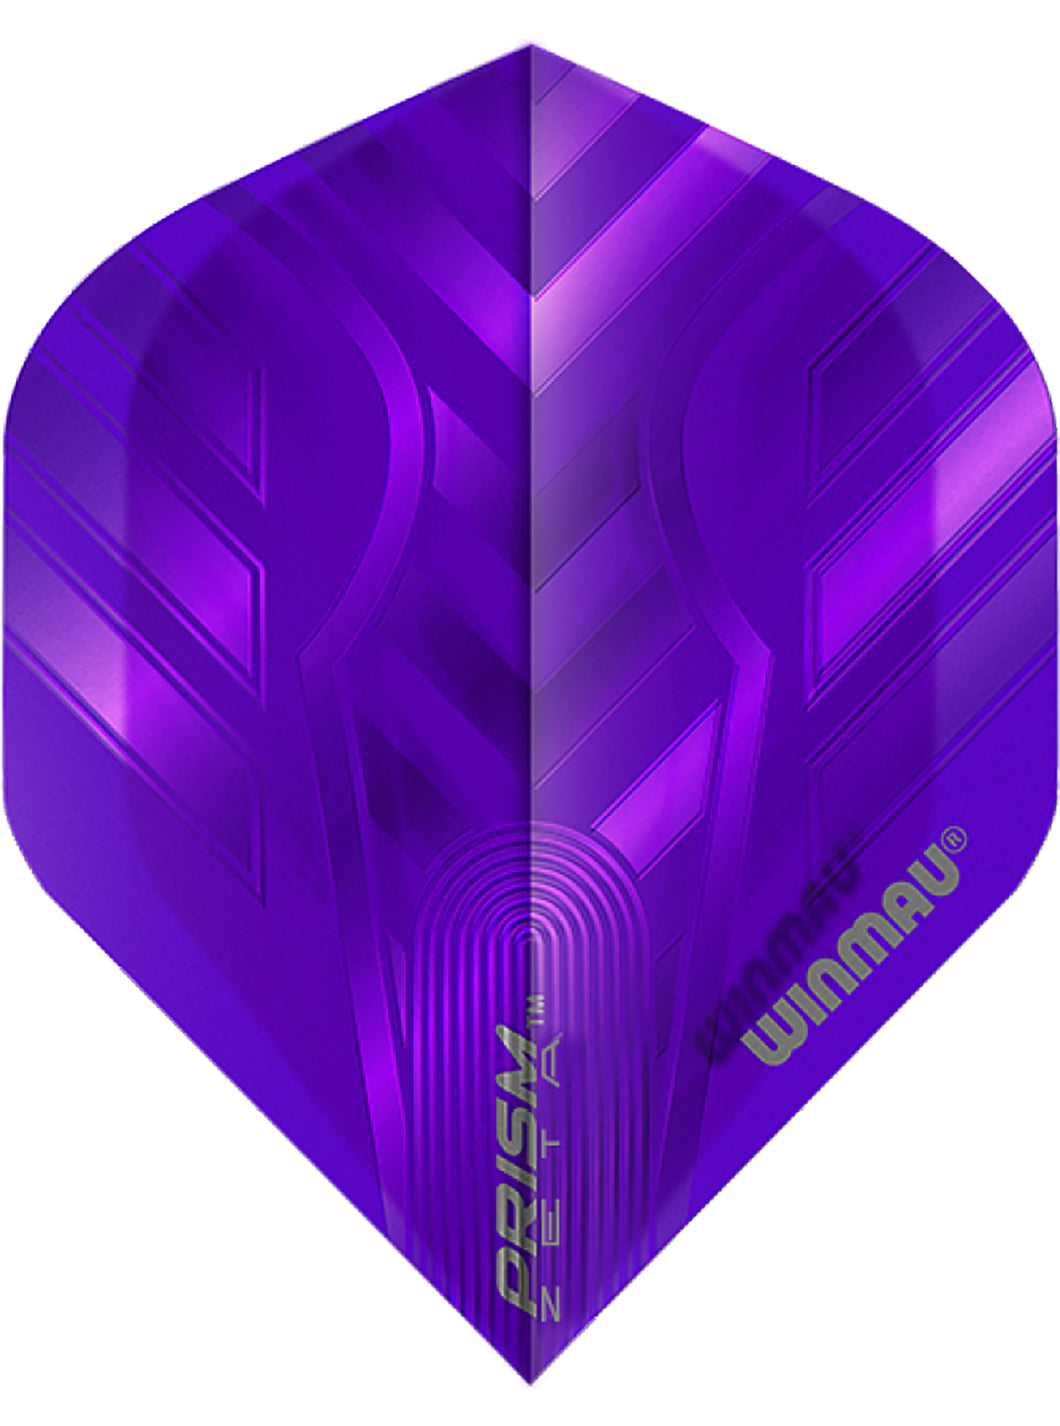 Winmau Prism Zeta Standard Shape Dart Flights - Purple